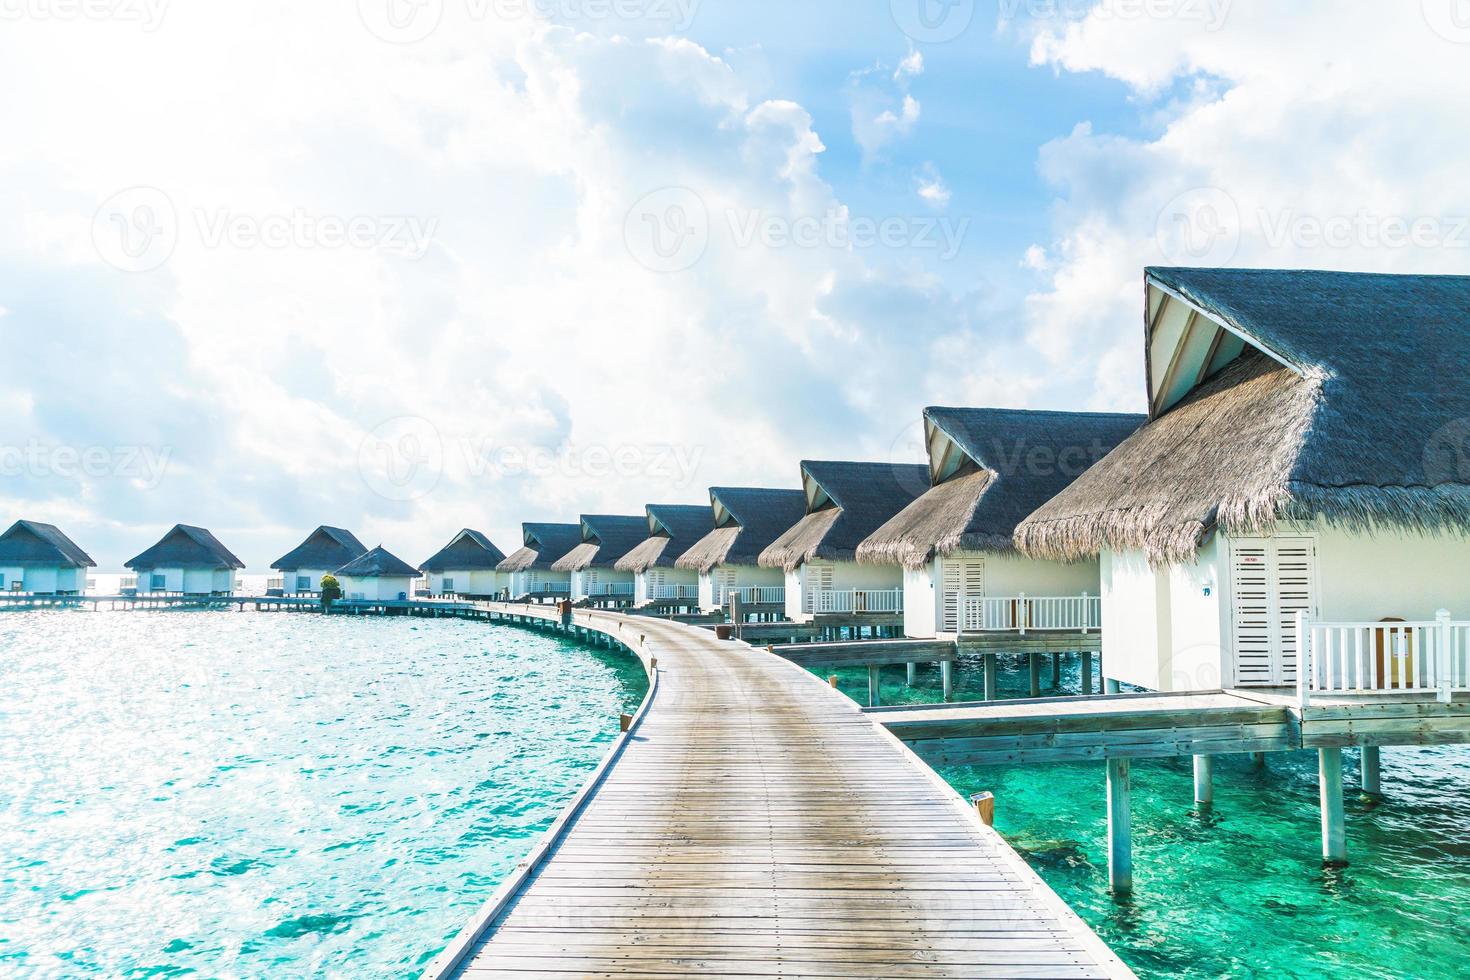 hotel resort tropicale maldive e isola con spiaggia e mare per il concetto di vacanza in vacanza - migliora lo stile di elaborazione del colore foto